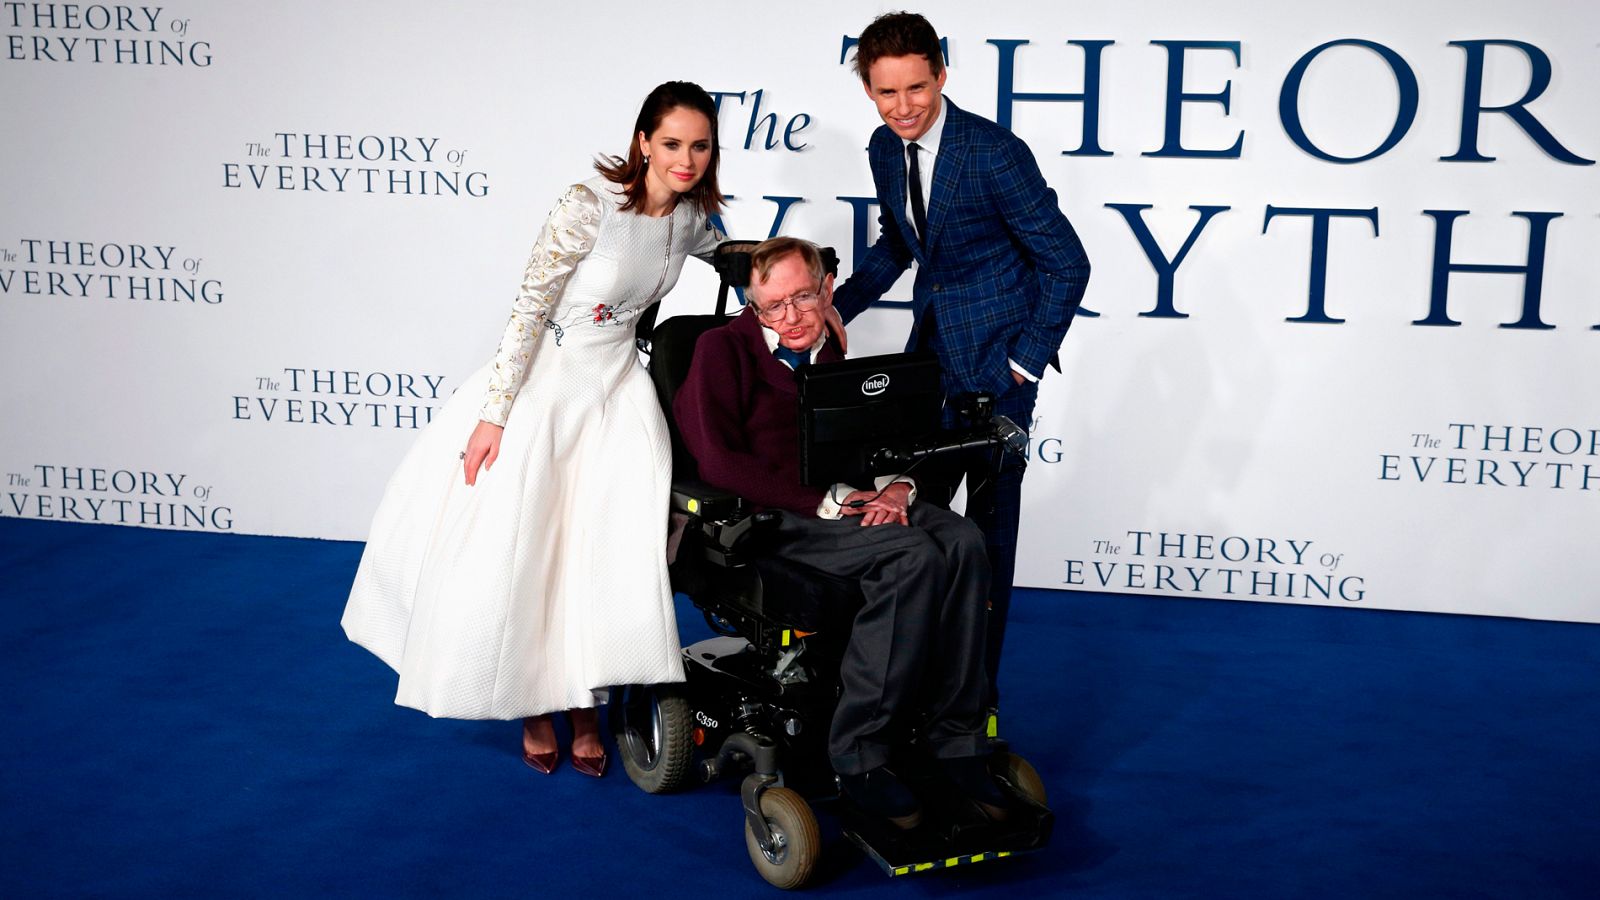 Conocido en todo el mundo por sus teorías científicas, la popularidad de Stephen Hawking le llevó a protagonizar documentales, series de televisión y también películas de Hollywood.... Una de las mentes más brillantes del siglo XX ha muerto convertid